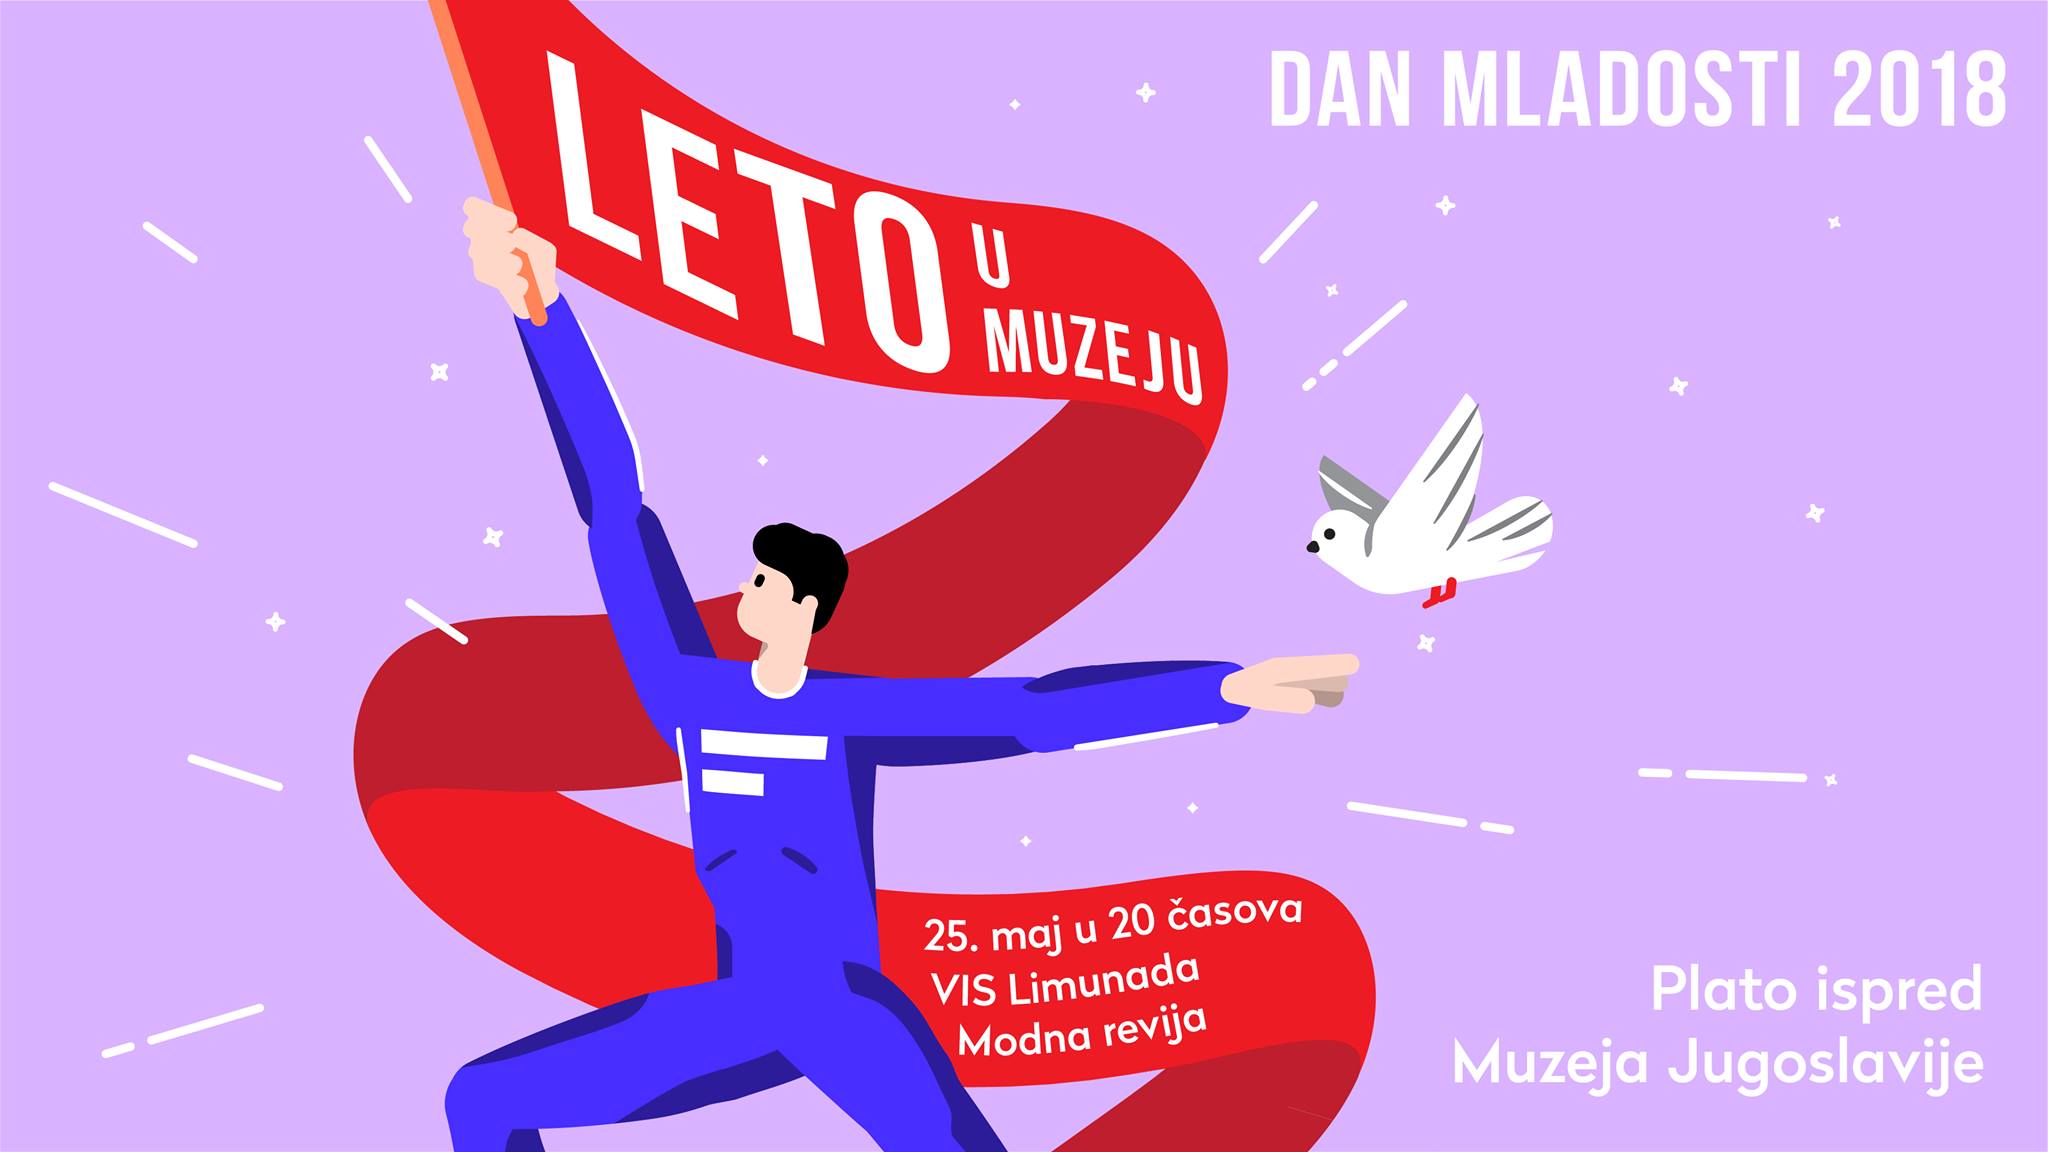 VIS Limunada + Modna revija / 25.05.2018. Muzej Jugoslavije